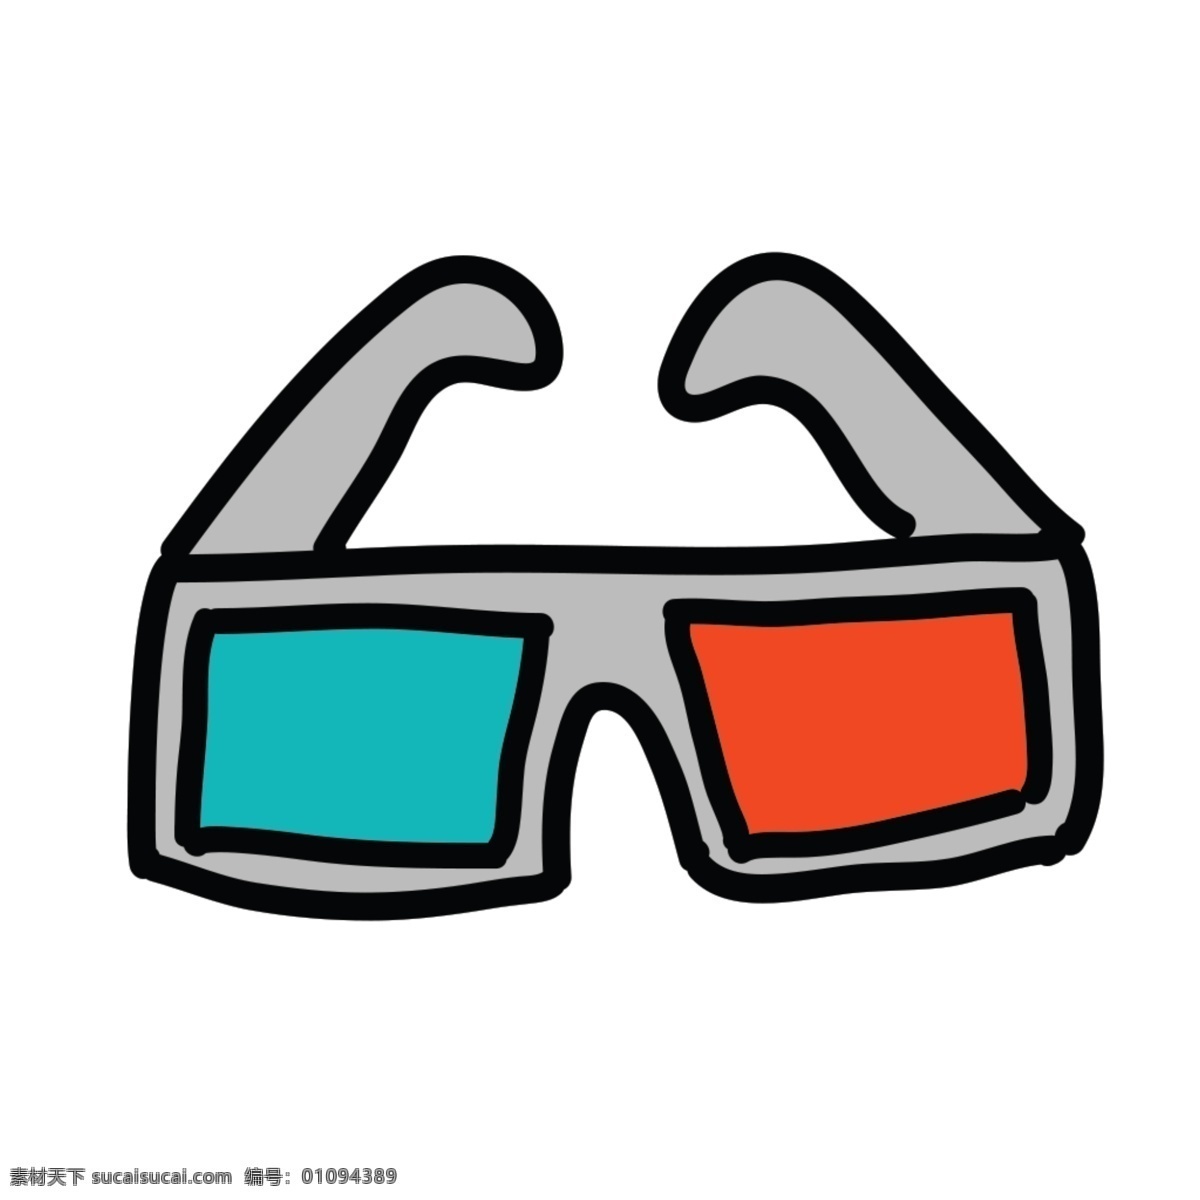 网页 ui3d 眼镜 icon 图标 图标设计 icon设计 icon图标 网页图标 眼镜图标 眼镜icon 3d眼镜图标 3d 3d眼镜